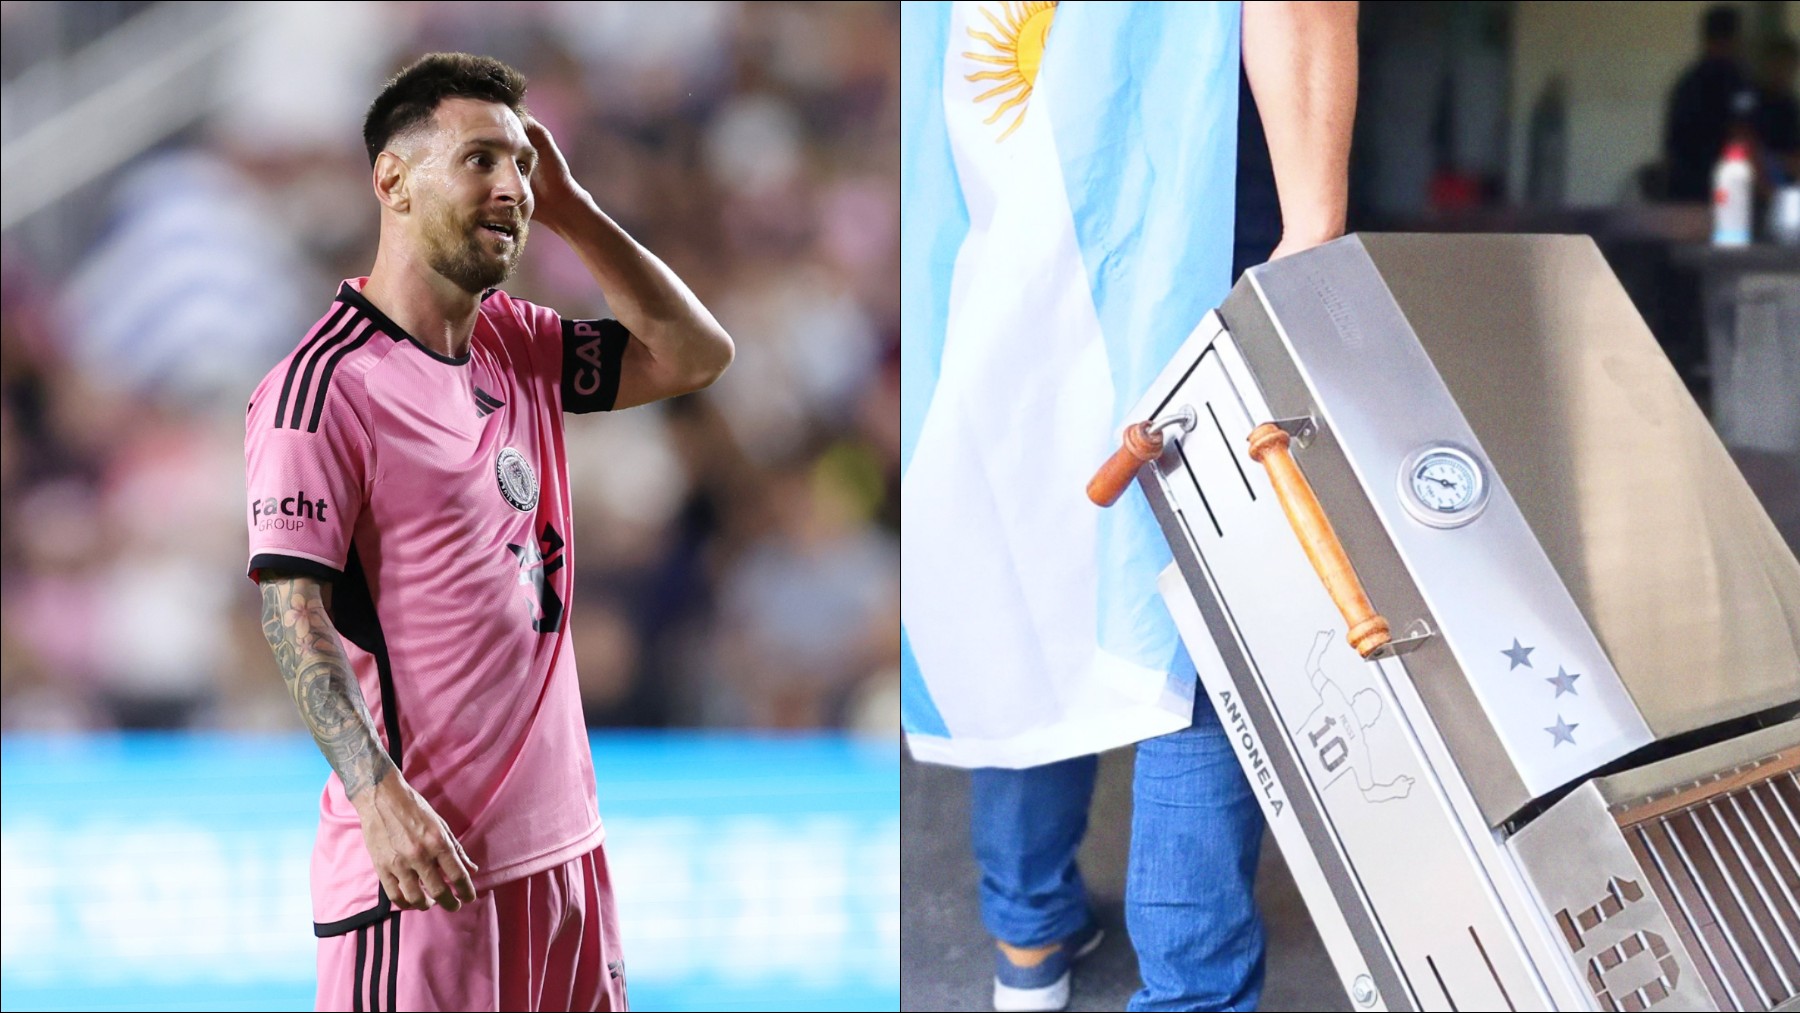 Esta es la parrilla personalizada que recibió Messi.